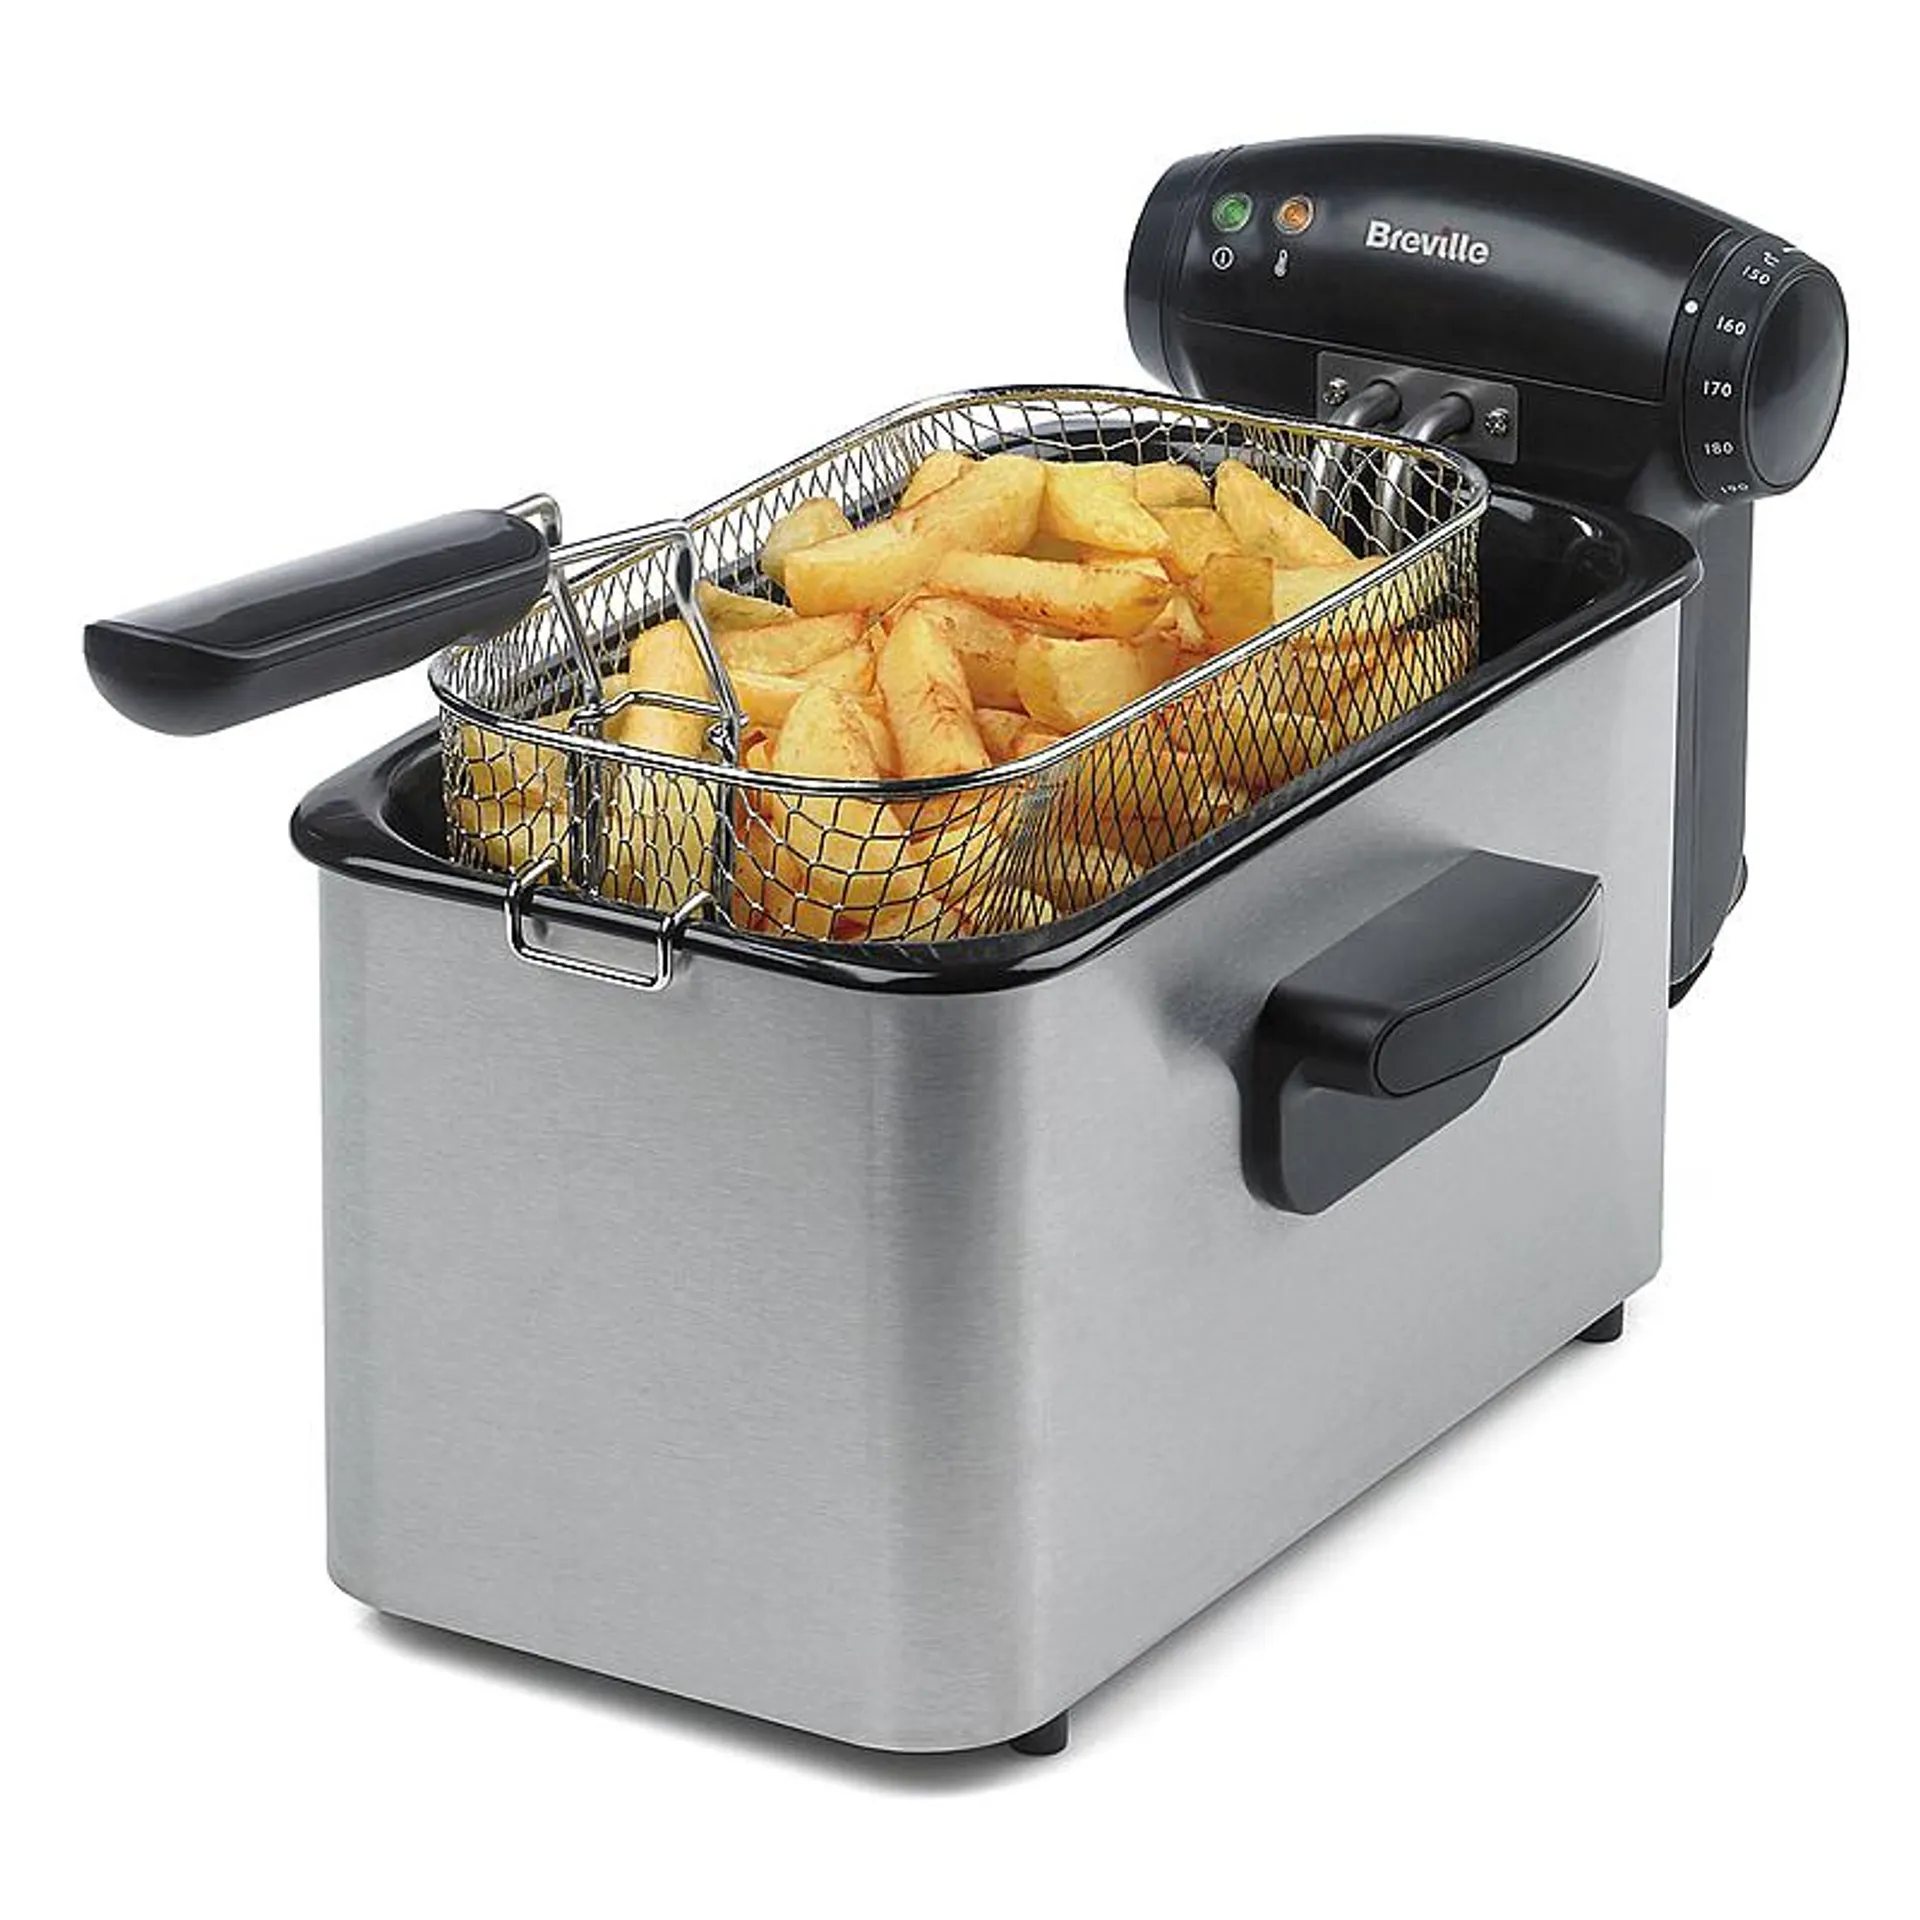 Breville 3 Litre Deep Fat Fryer (Size 31x17x16 Cm) - 2000W